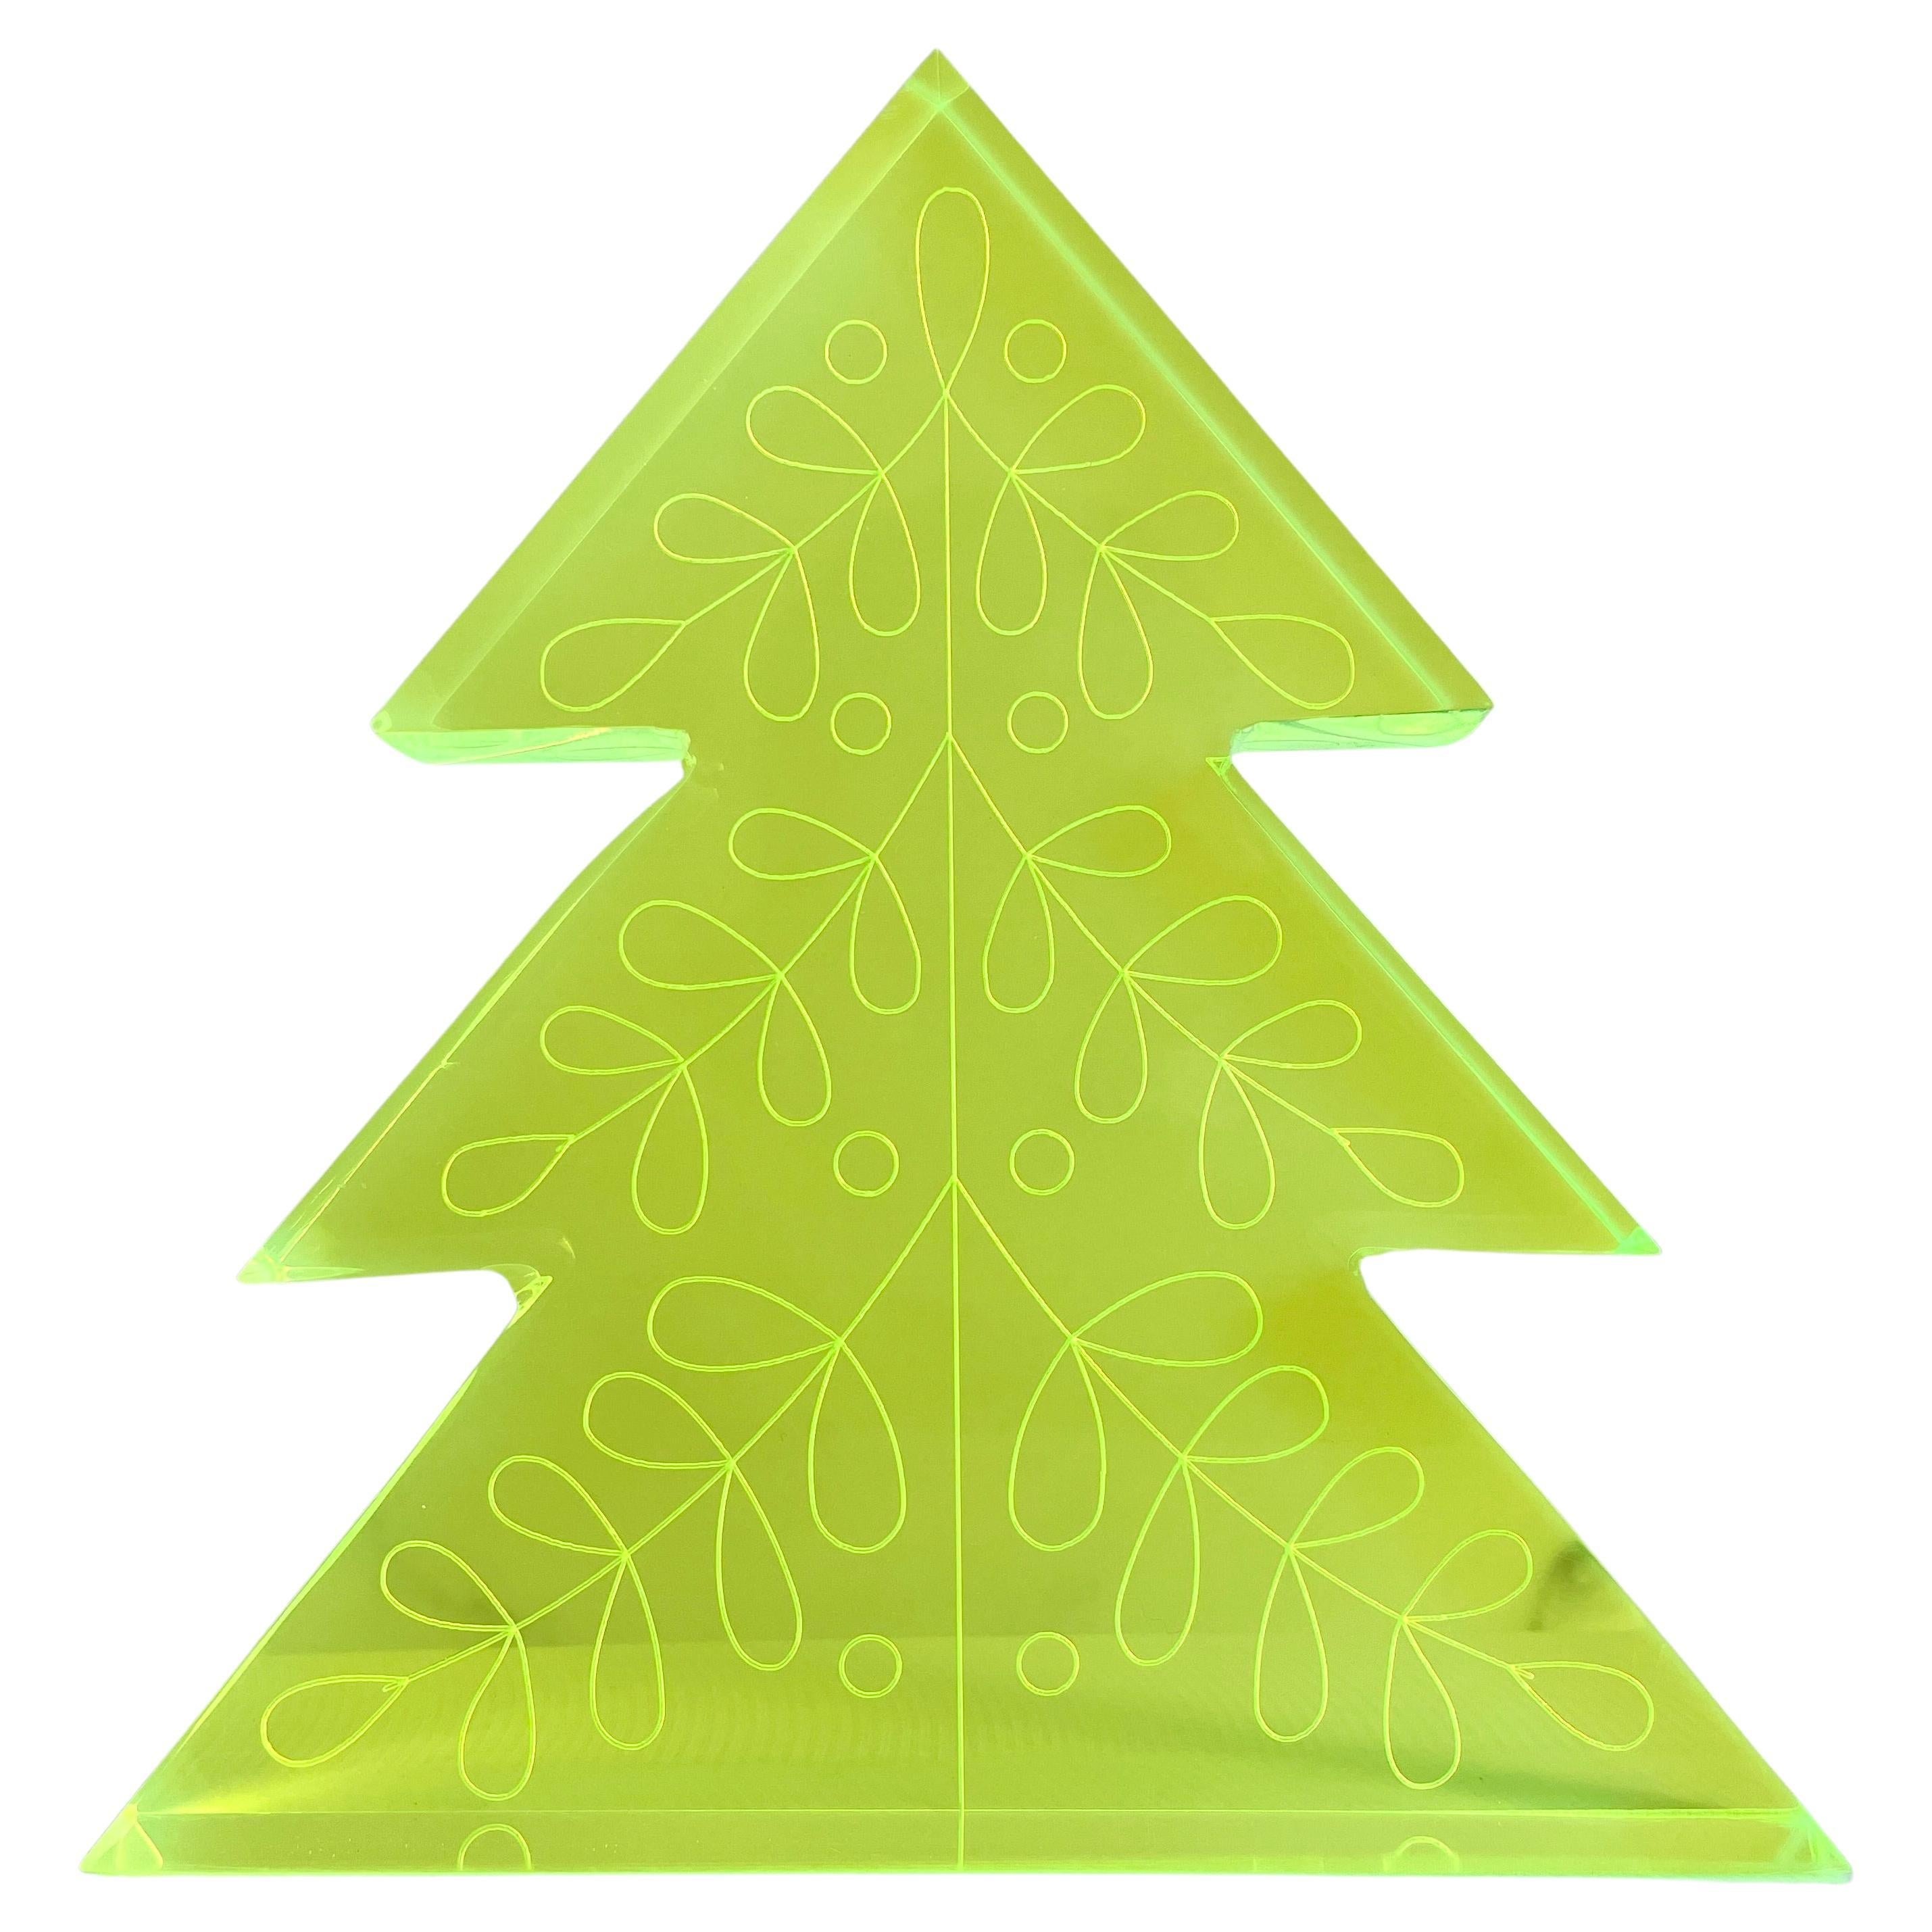 Décoration d'arbre de Noël en acrylique vert fluo par Paola Valle